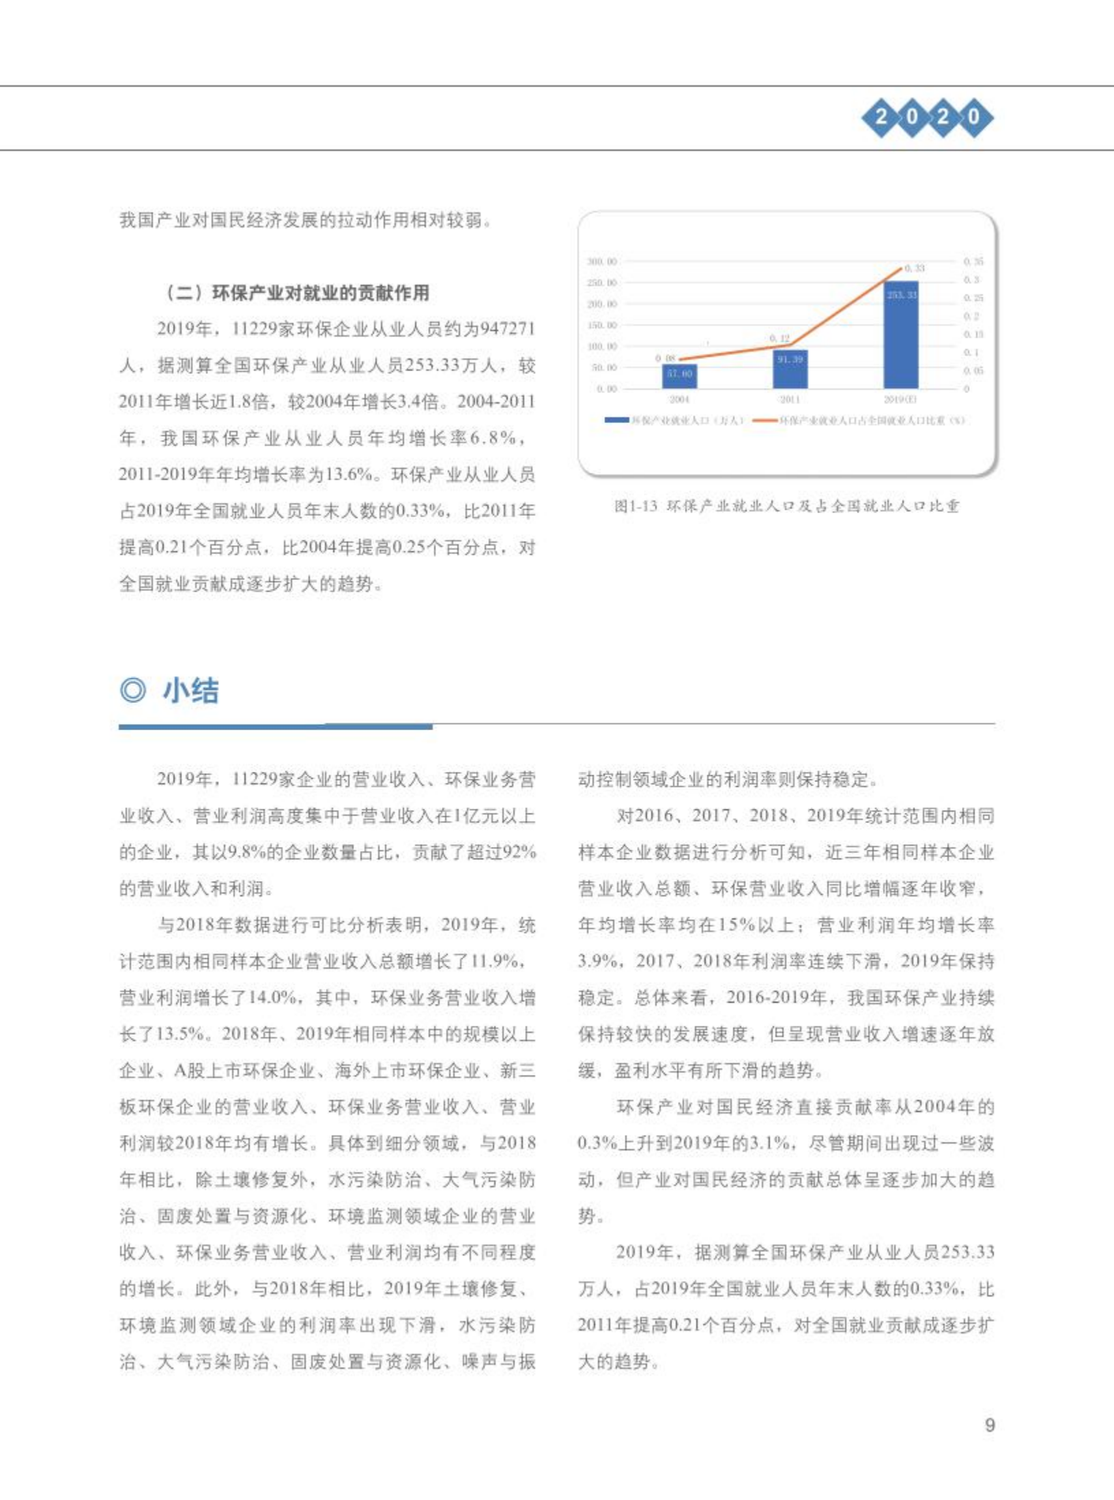 【2020】中国环保产业发展状况报告_10.png